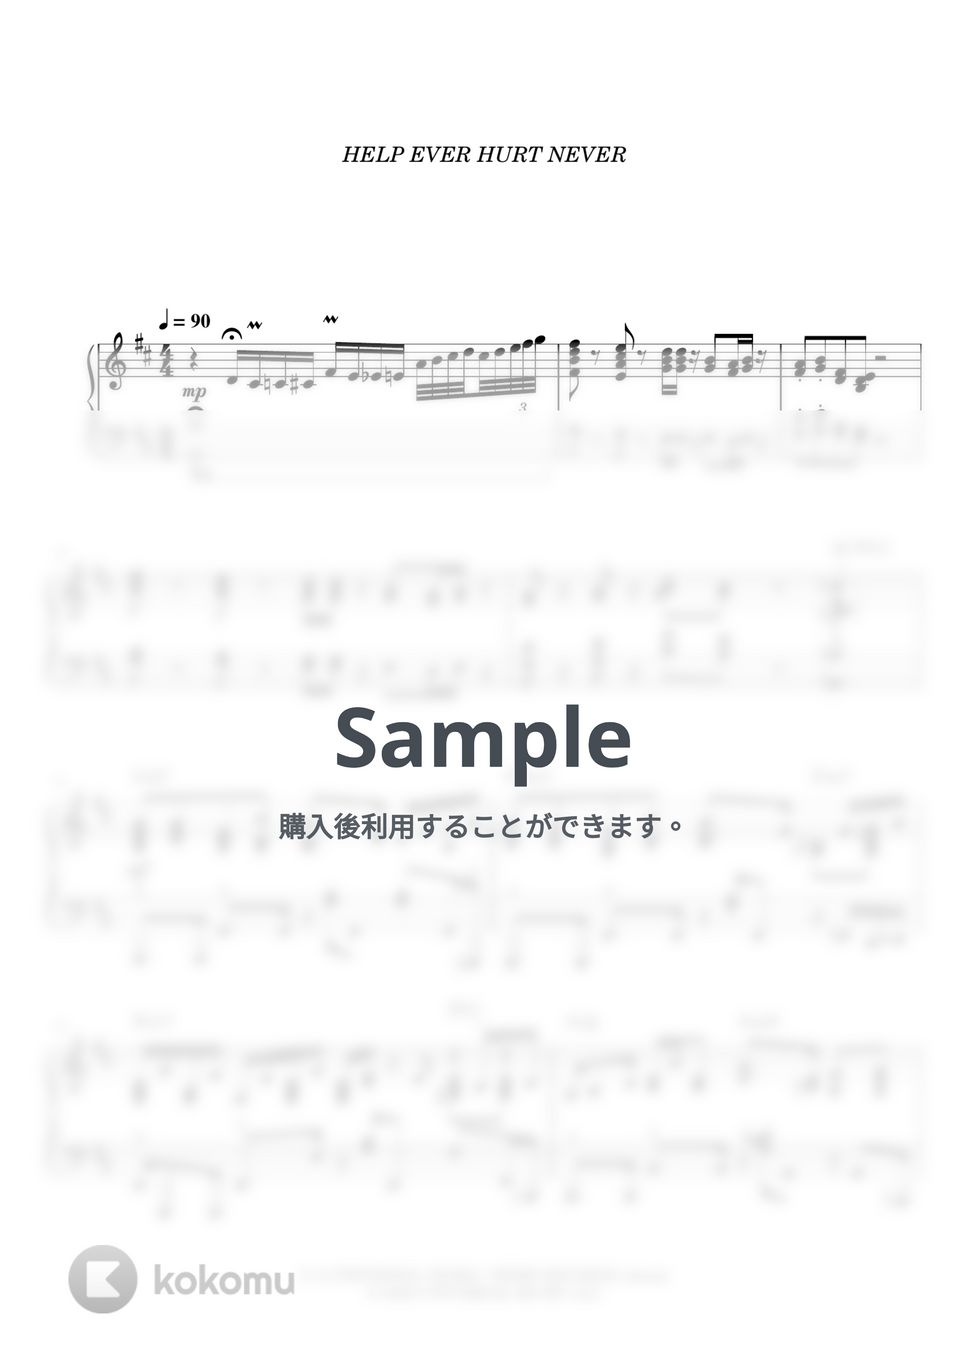 藤井 風 - 何なんw (Nan-Nan by Fujii Kaze) by BambooOnFire's Music Lab